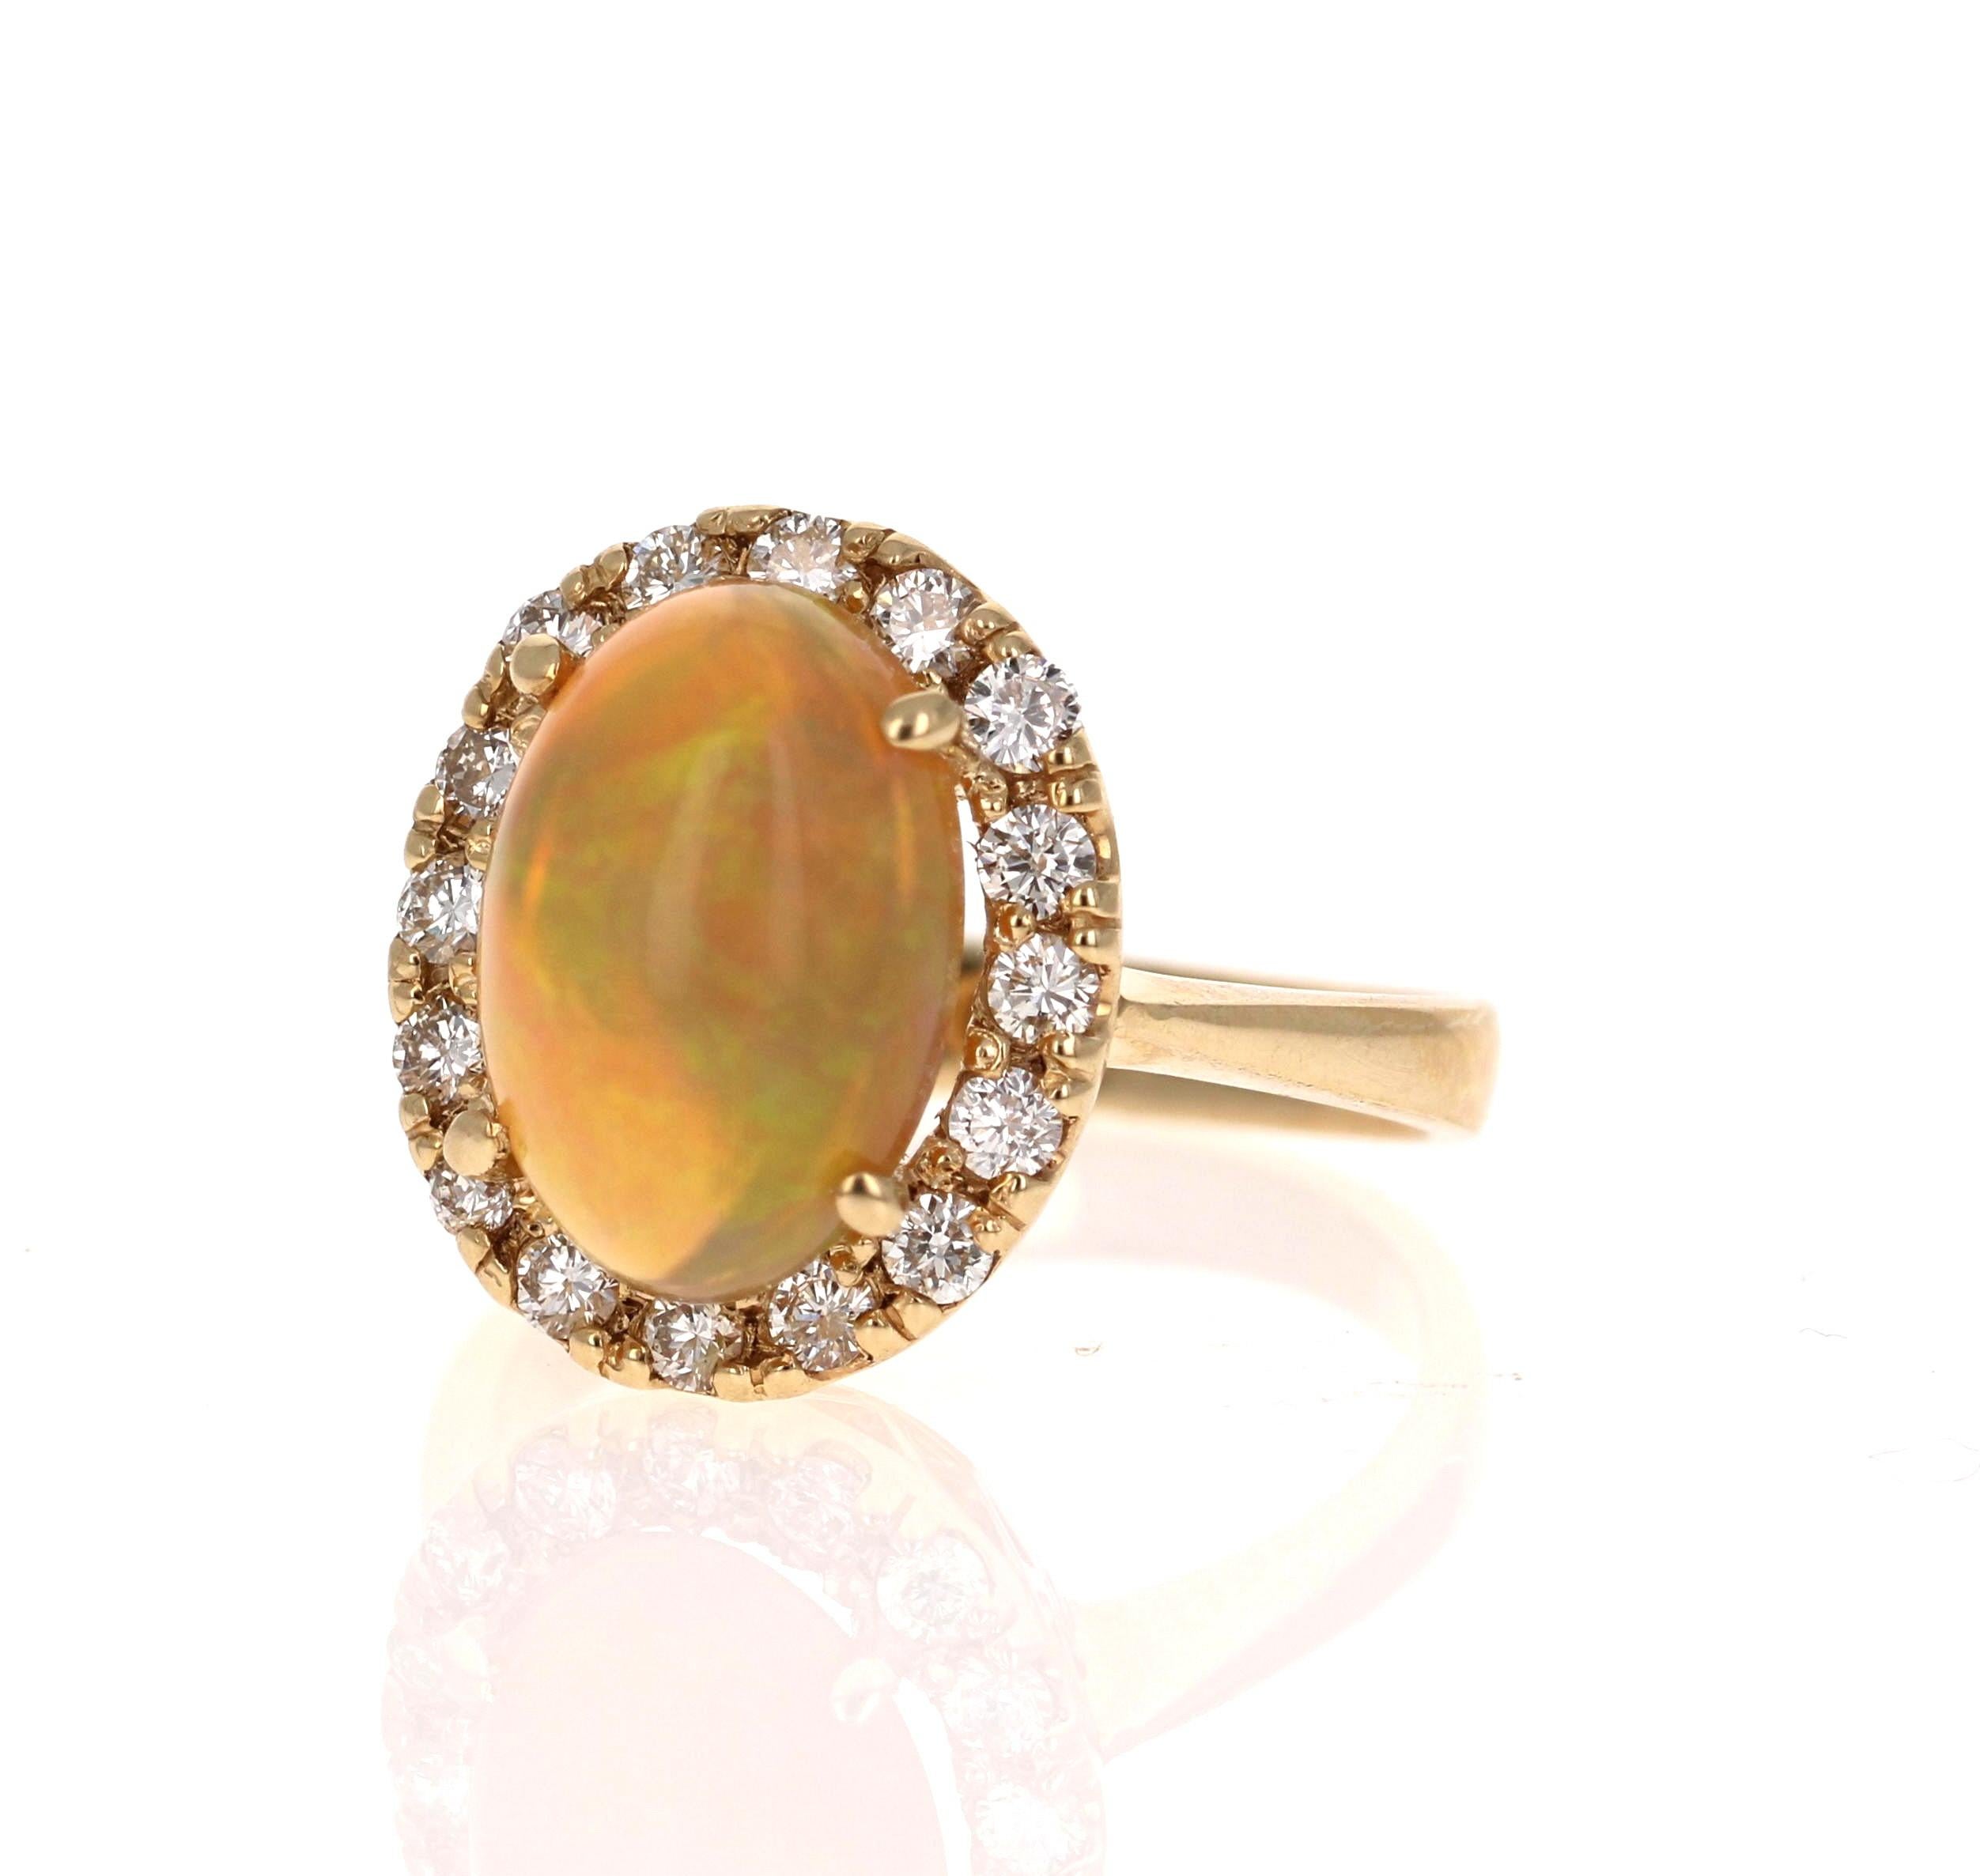 Dieser Ring hat einen niedlichen und einfachen 2,88 Karat Opal und hat einen Halo von 16 Diamanten im Rundschliff, die 0,55 Karat wiegen (Klarheit: VS2, Farbe: H). Das Gesamtkaratgewicht des Rings beträgt 3,43 Karat. 

Der Opal zeigt schöne grüne,